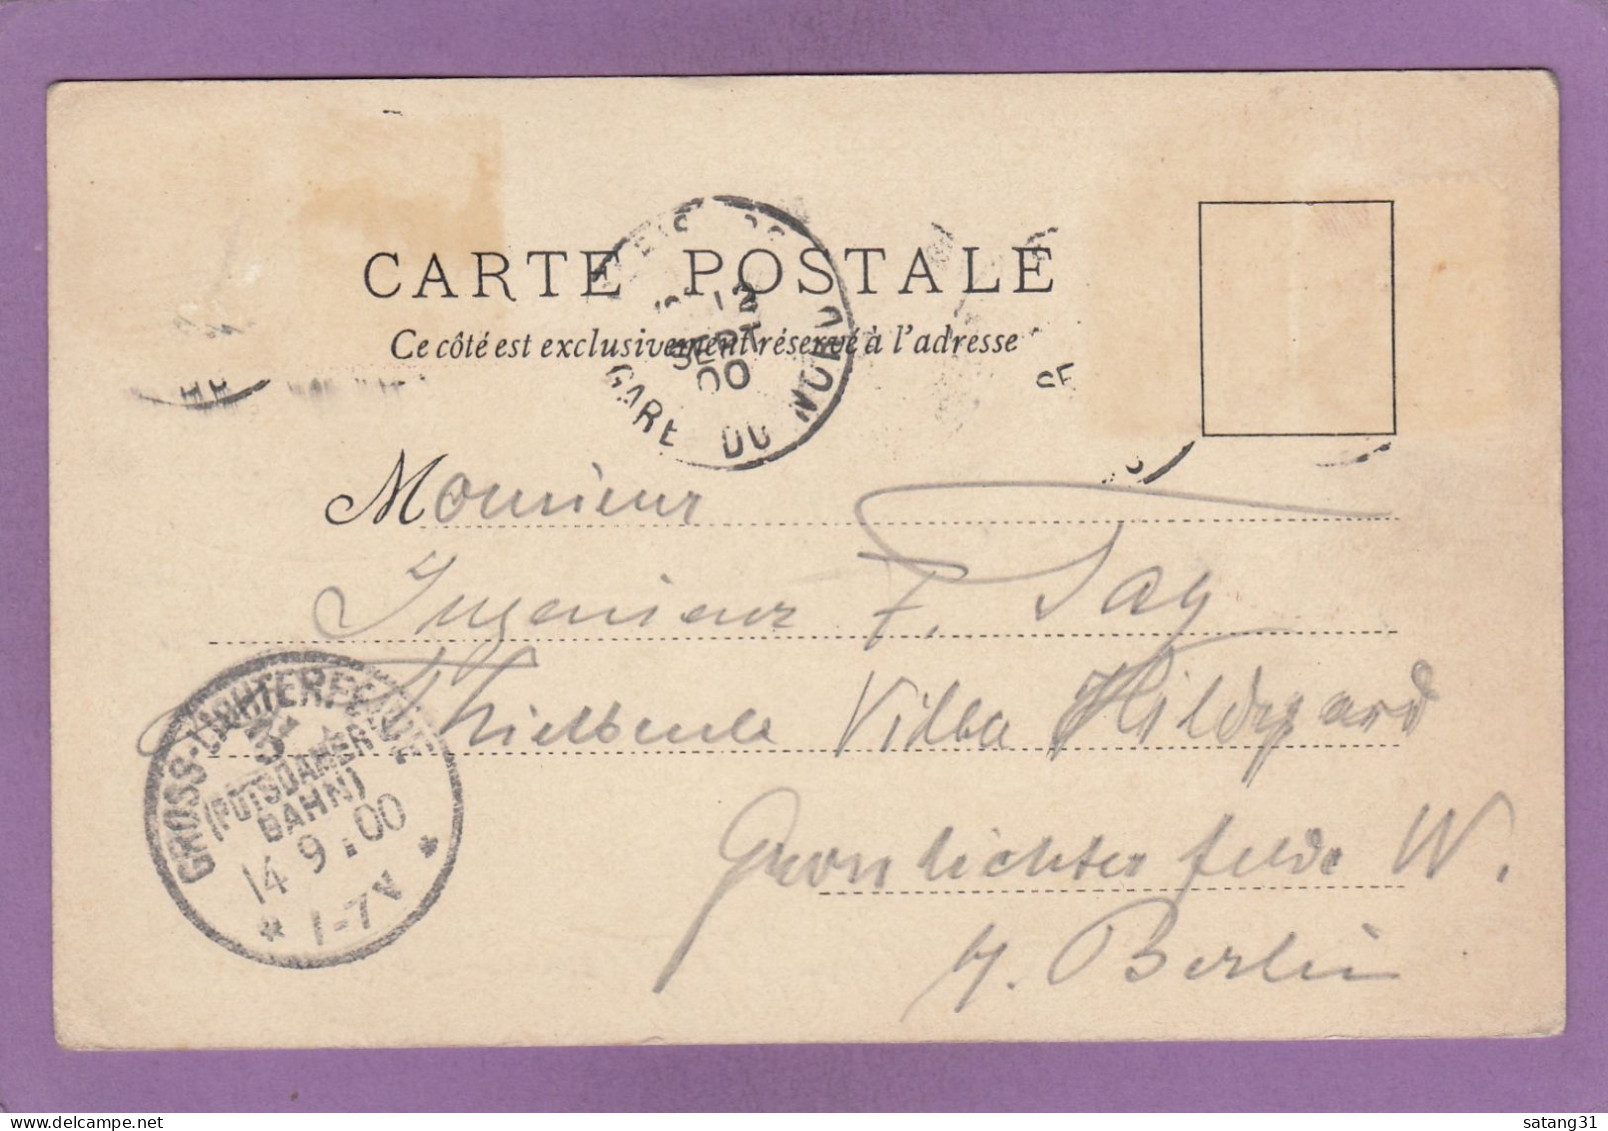 WELTAUSSTELLUNG PARIS 1900. DAS DEUTSCHE WEINRESTAURANT O.H.C. KONS BERLIN. - Exhibitions